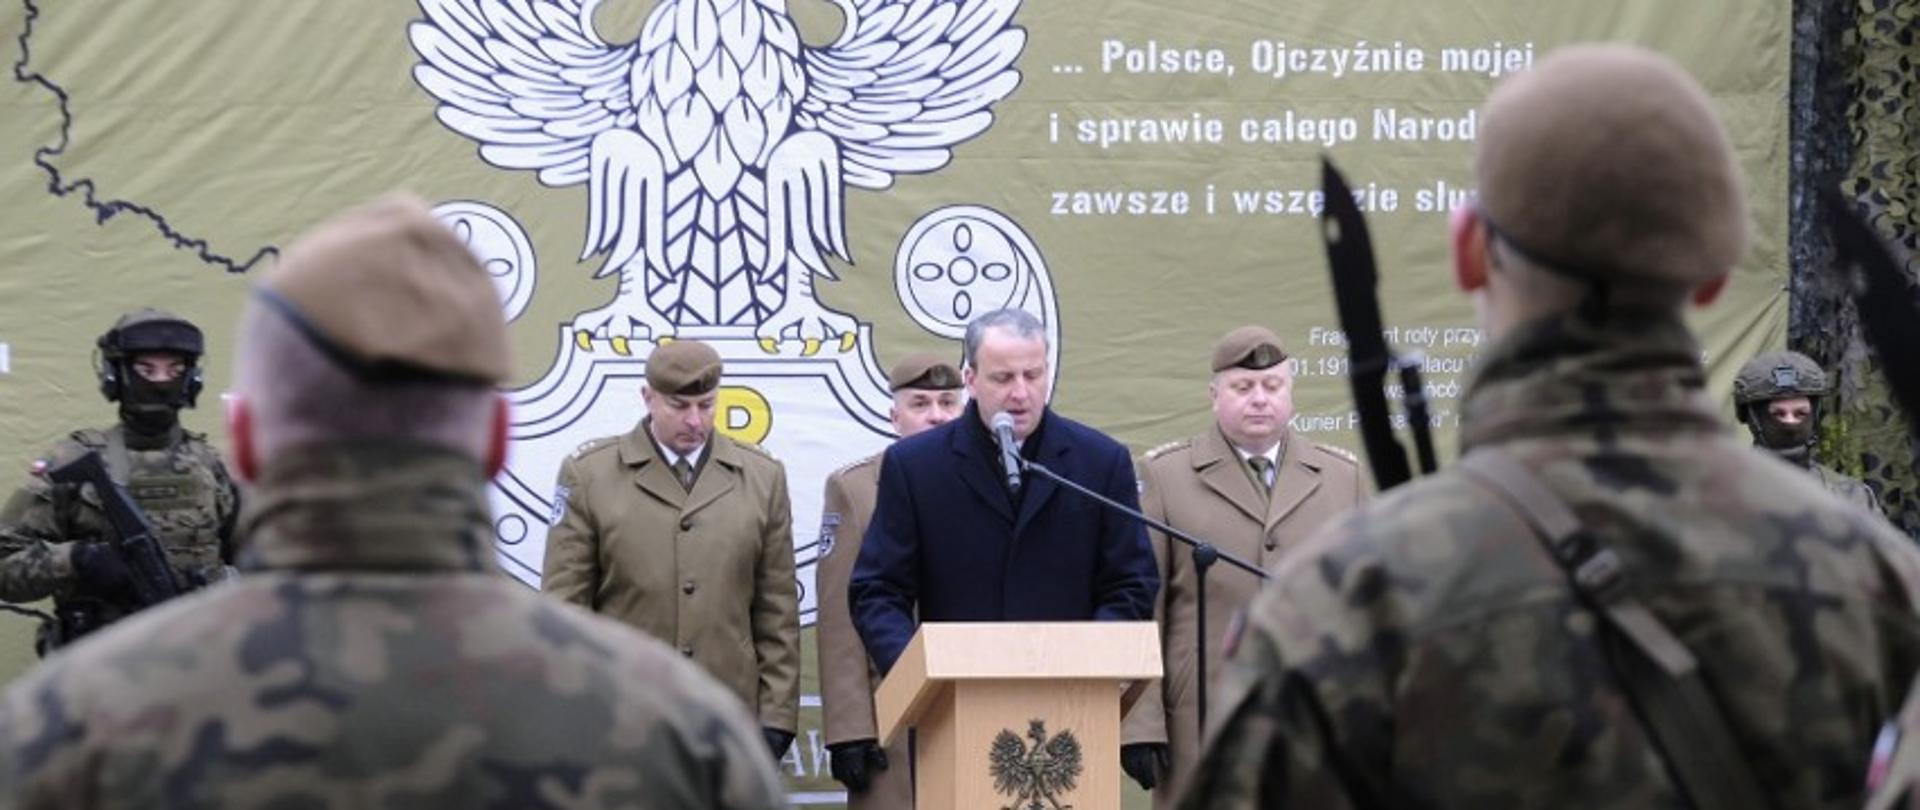 męzczyzna stoi przy mównicy przed grupą żołnierzy, za nim stoją żołnierze w szeregu, w tle na zielonej ściance biały orzeł